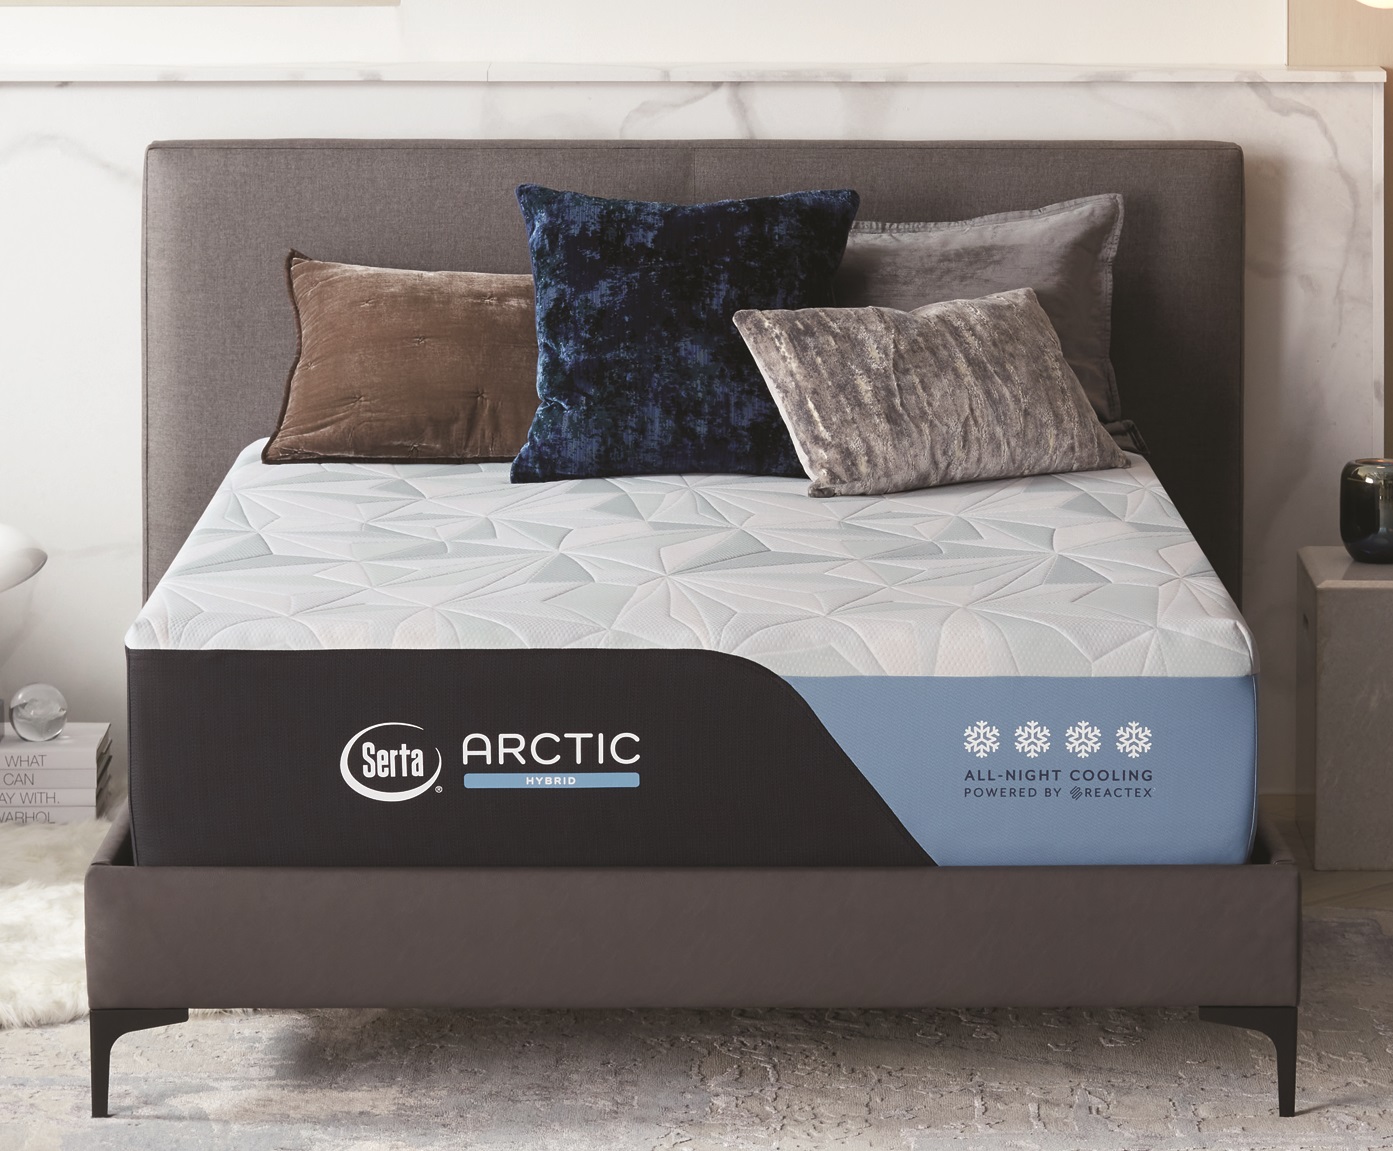 serta arctic premier mattress